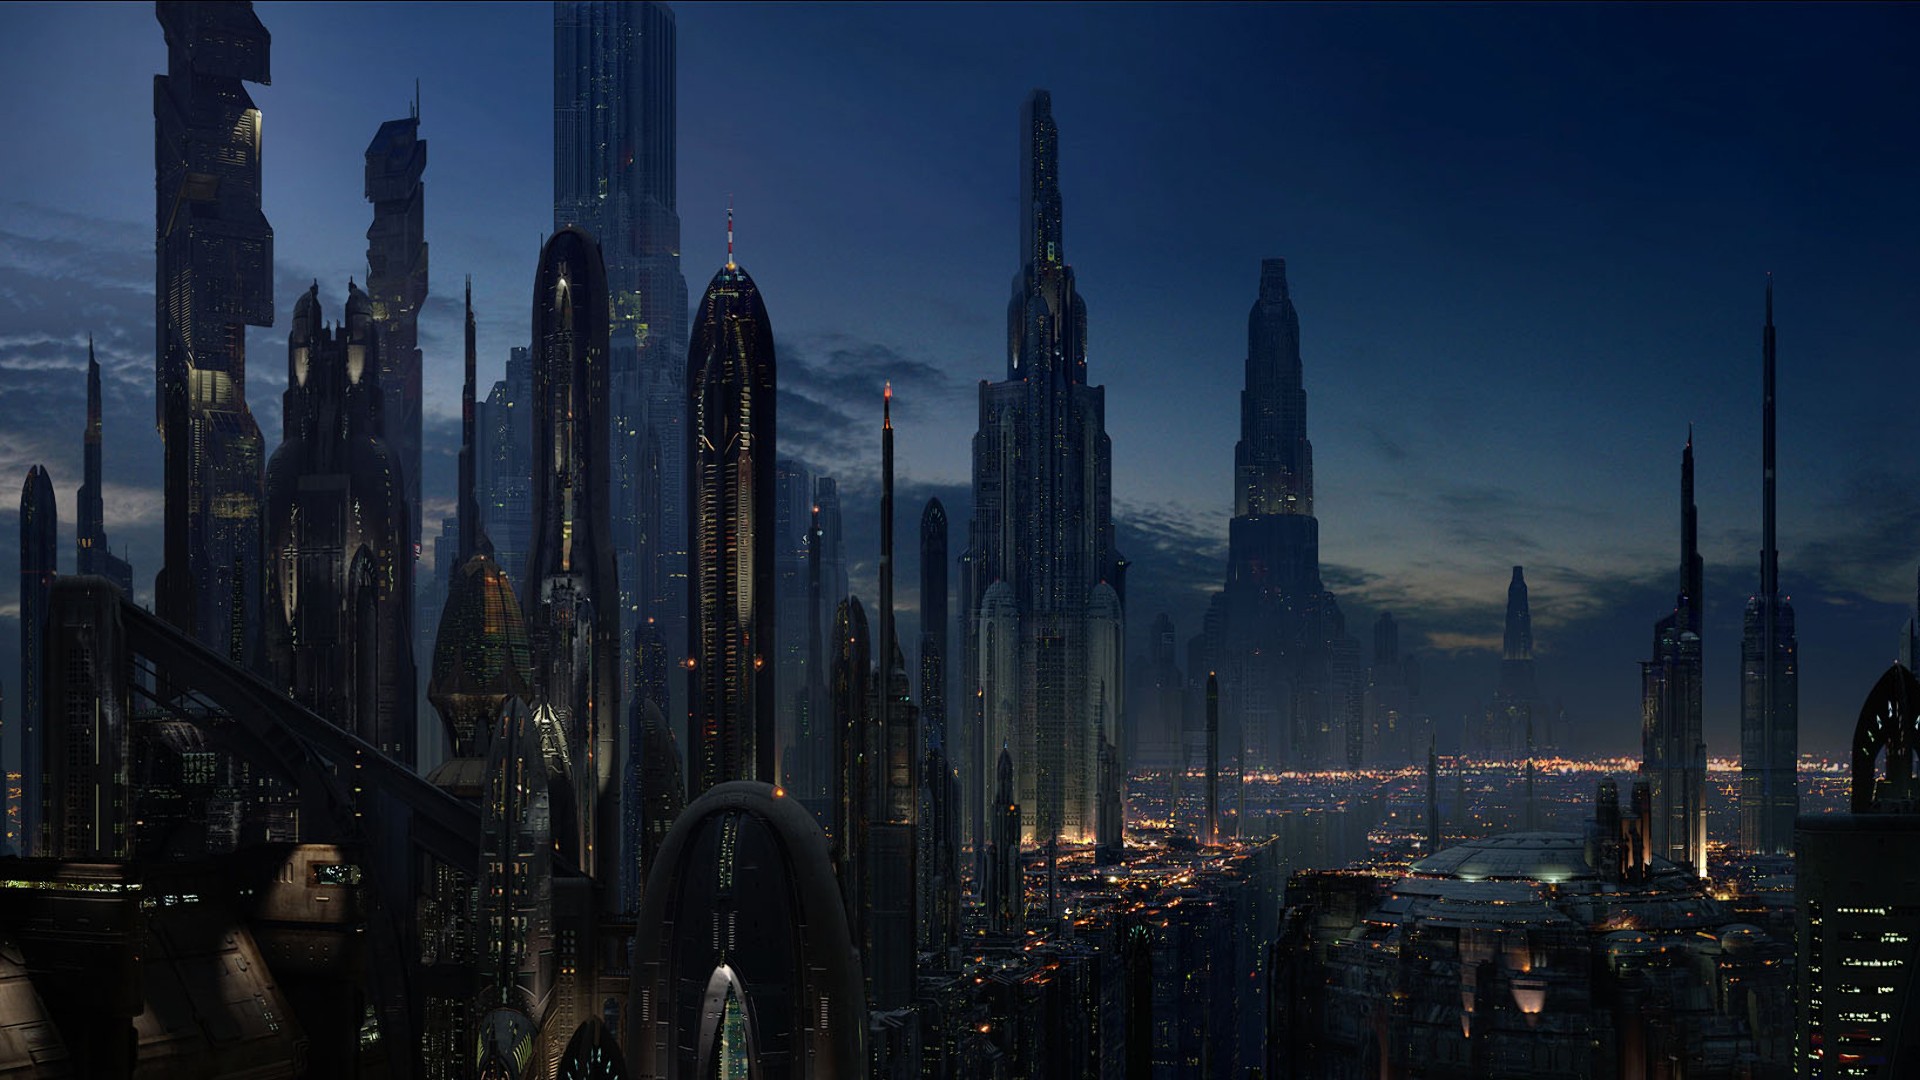 Cityscape Futuristic Star Wars Coruscant Dystopian Science Fiction 1920x1080